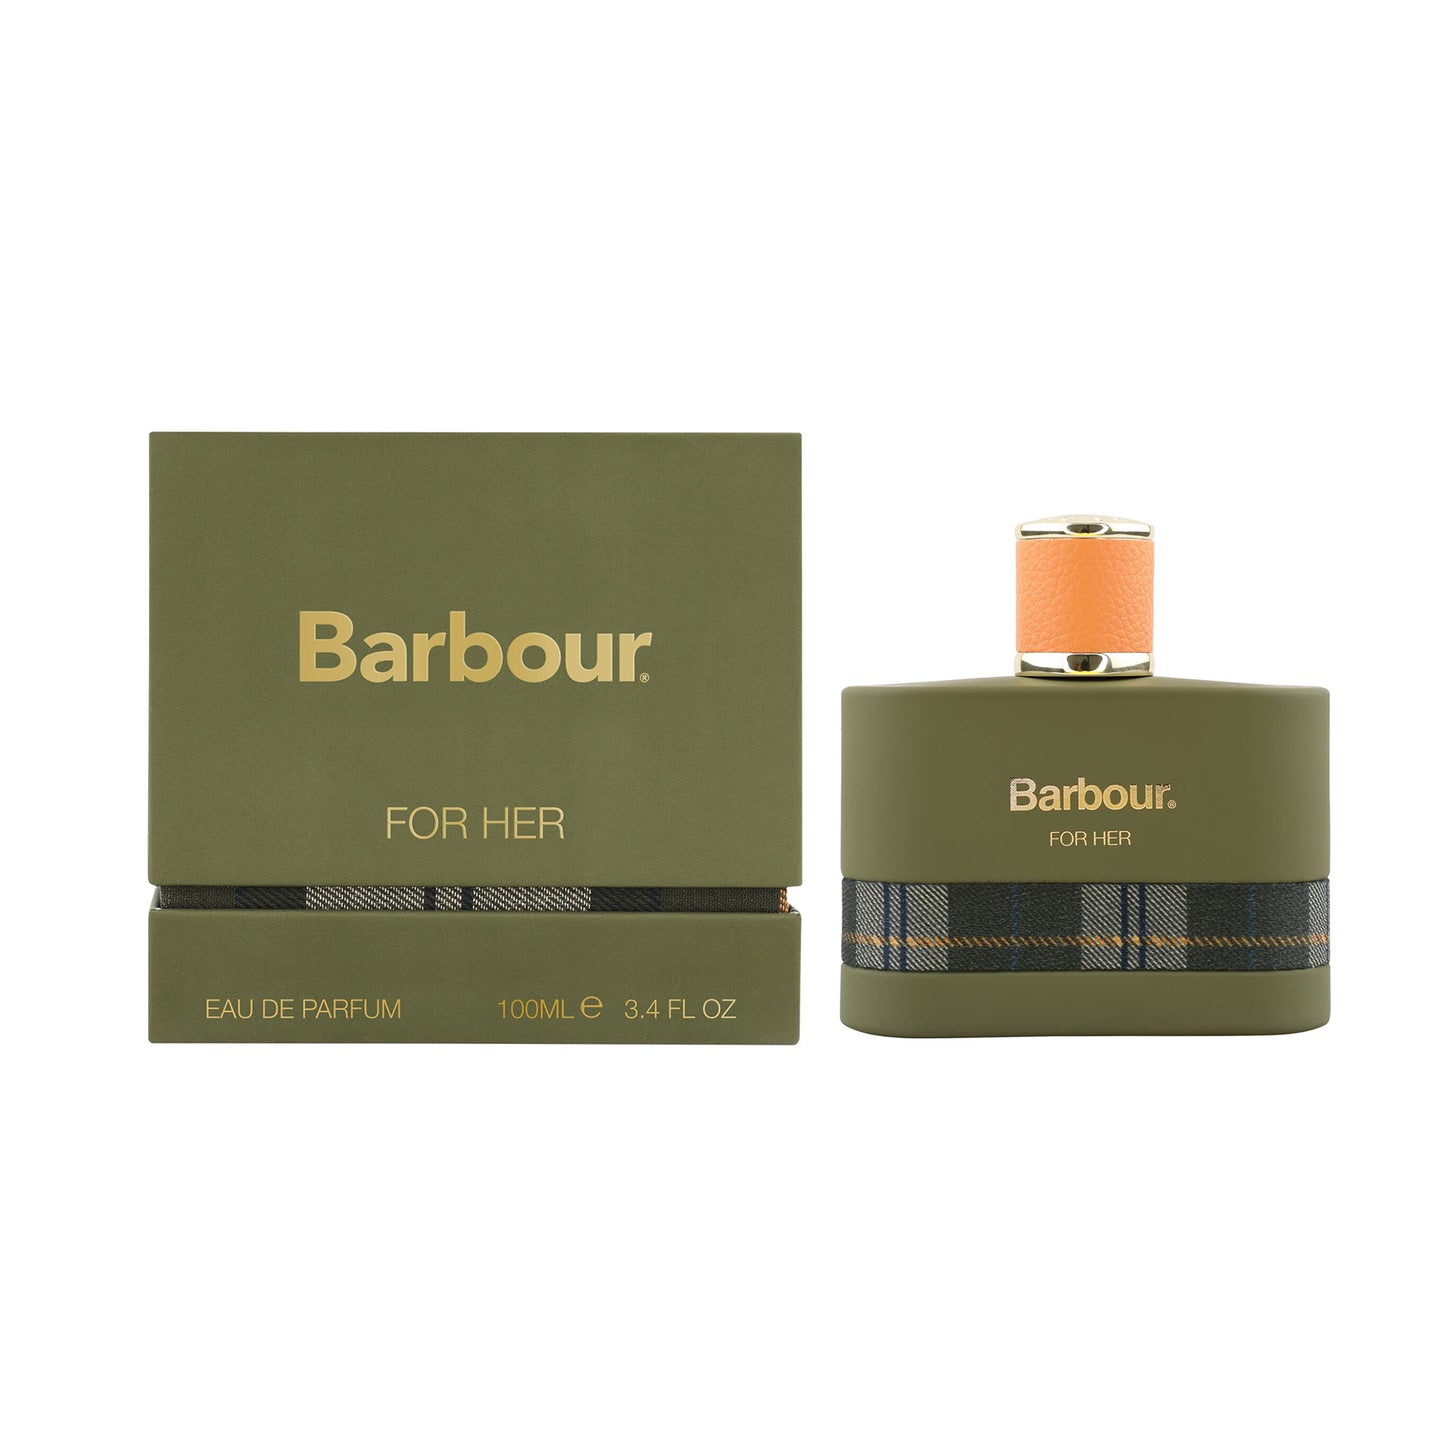 Barbour For Her Eau de Parfum